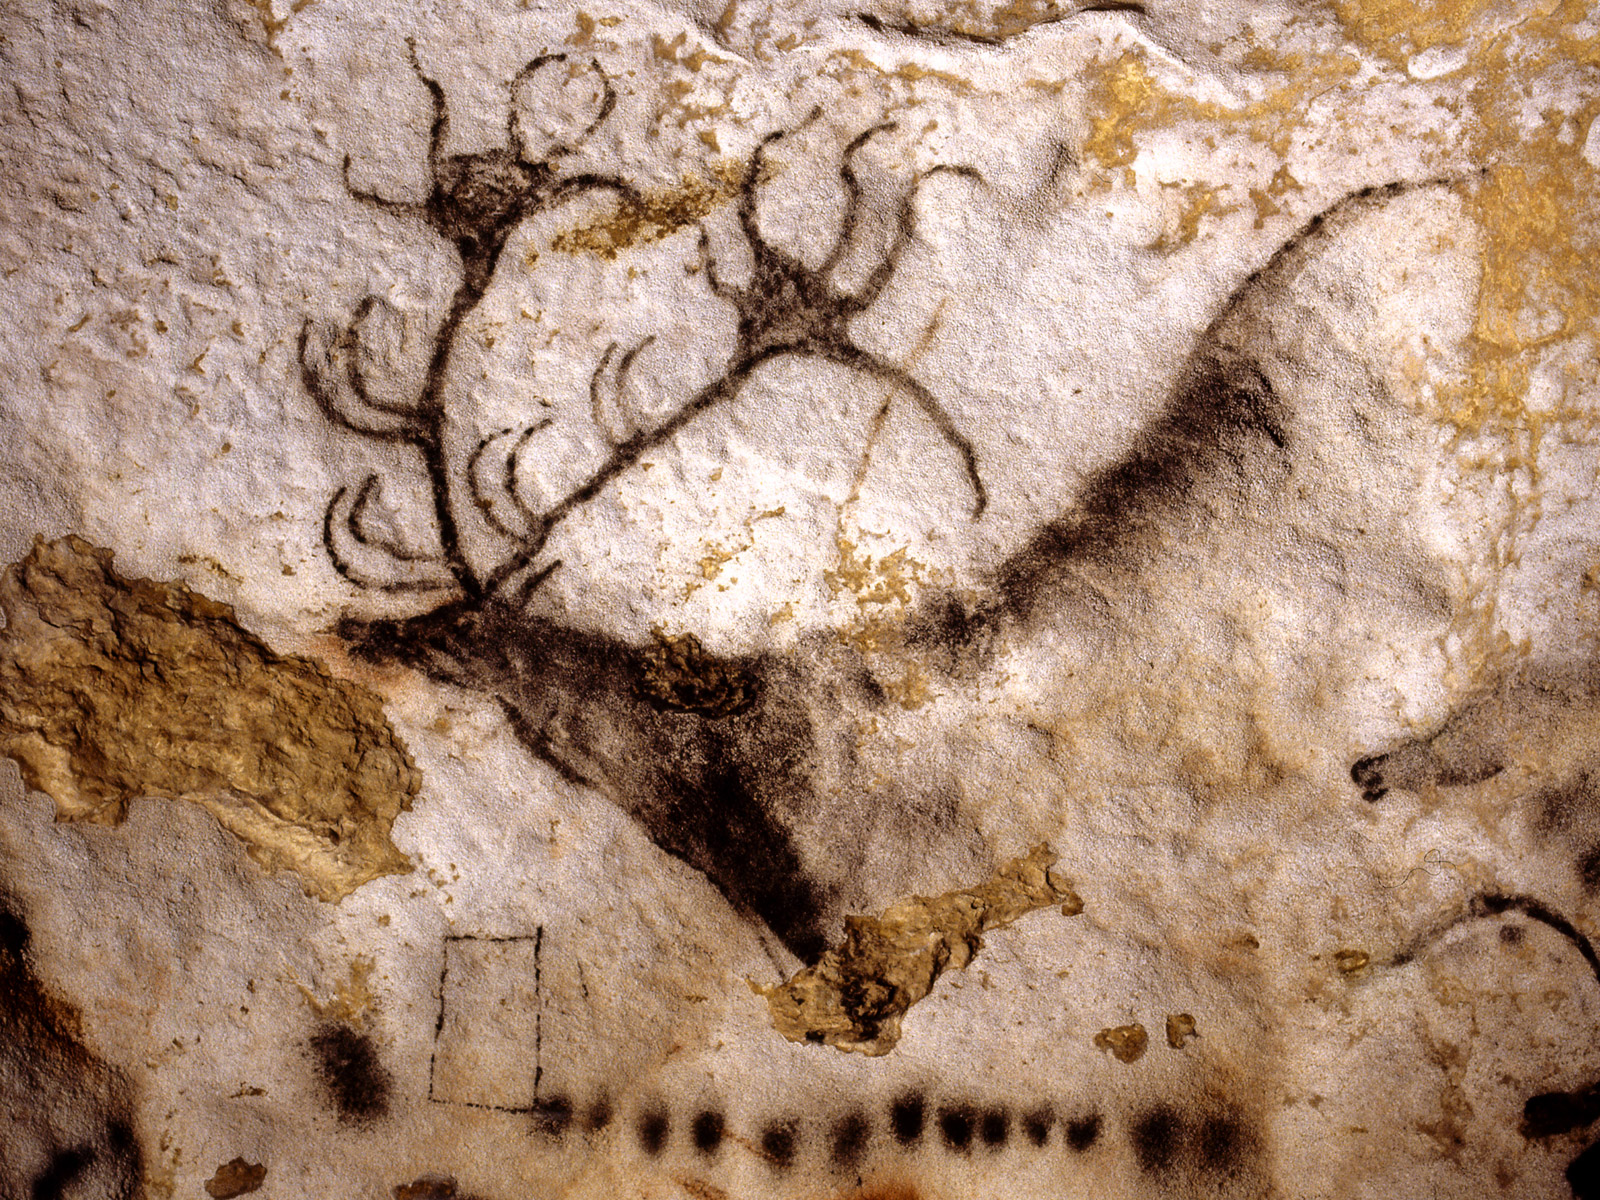 42+] Lascaux Cave Paintings Wallpaper - WallpaperSafari